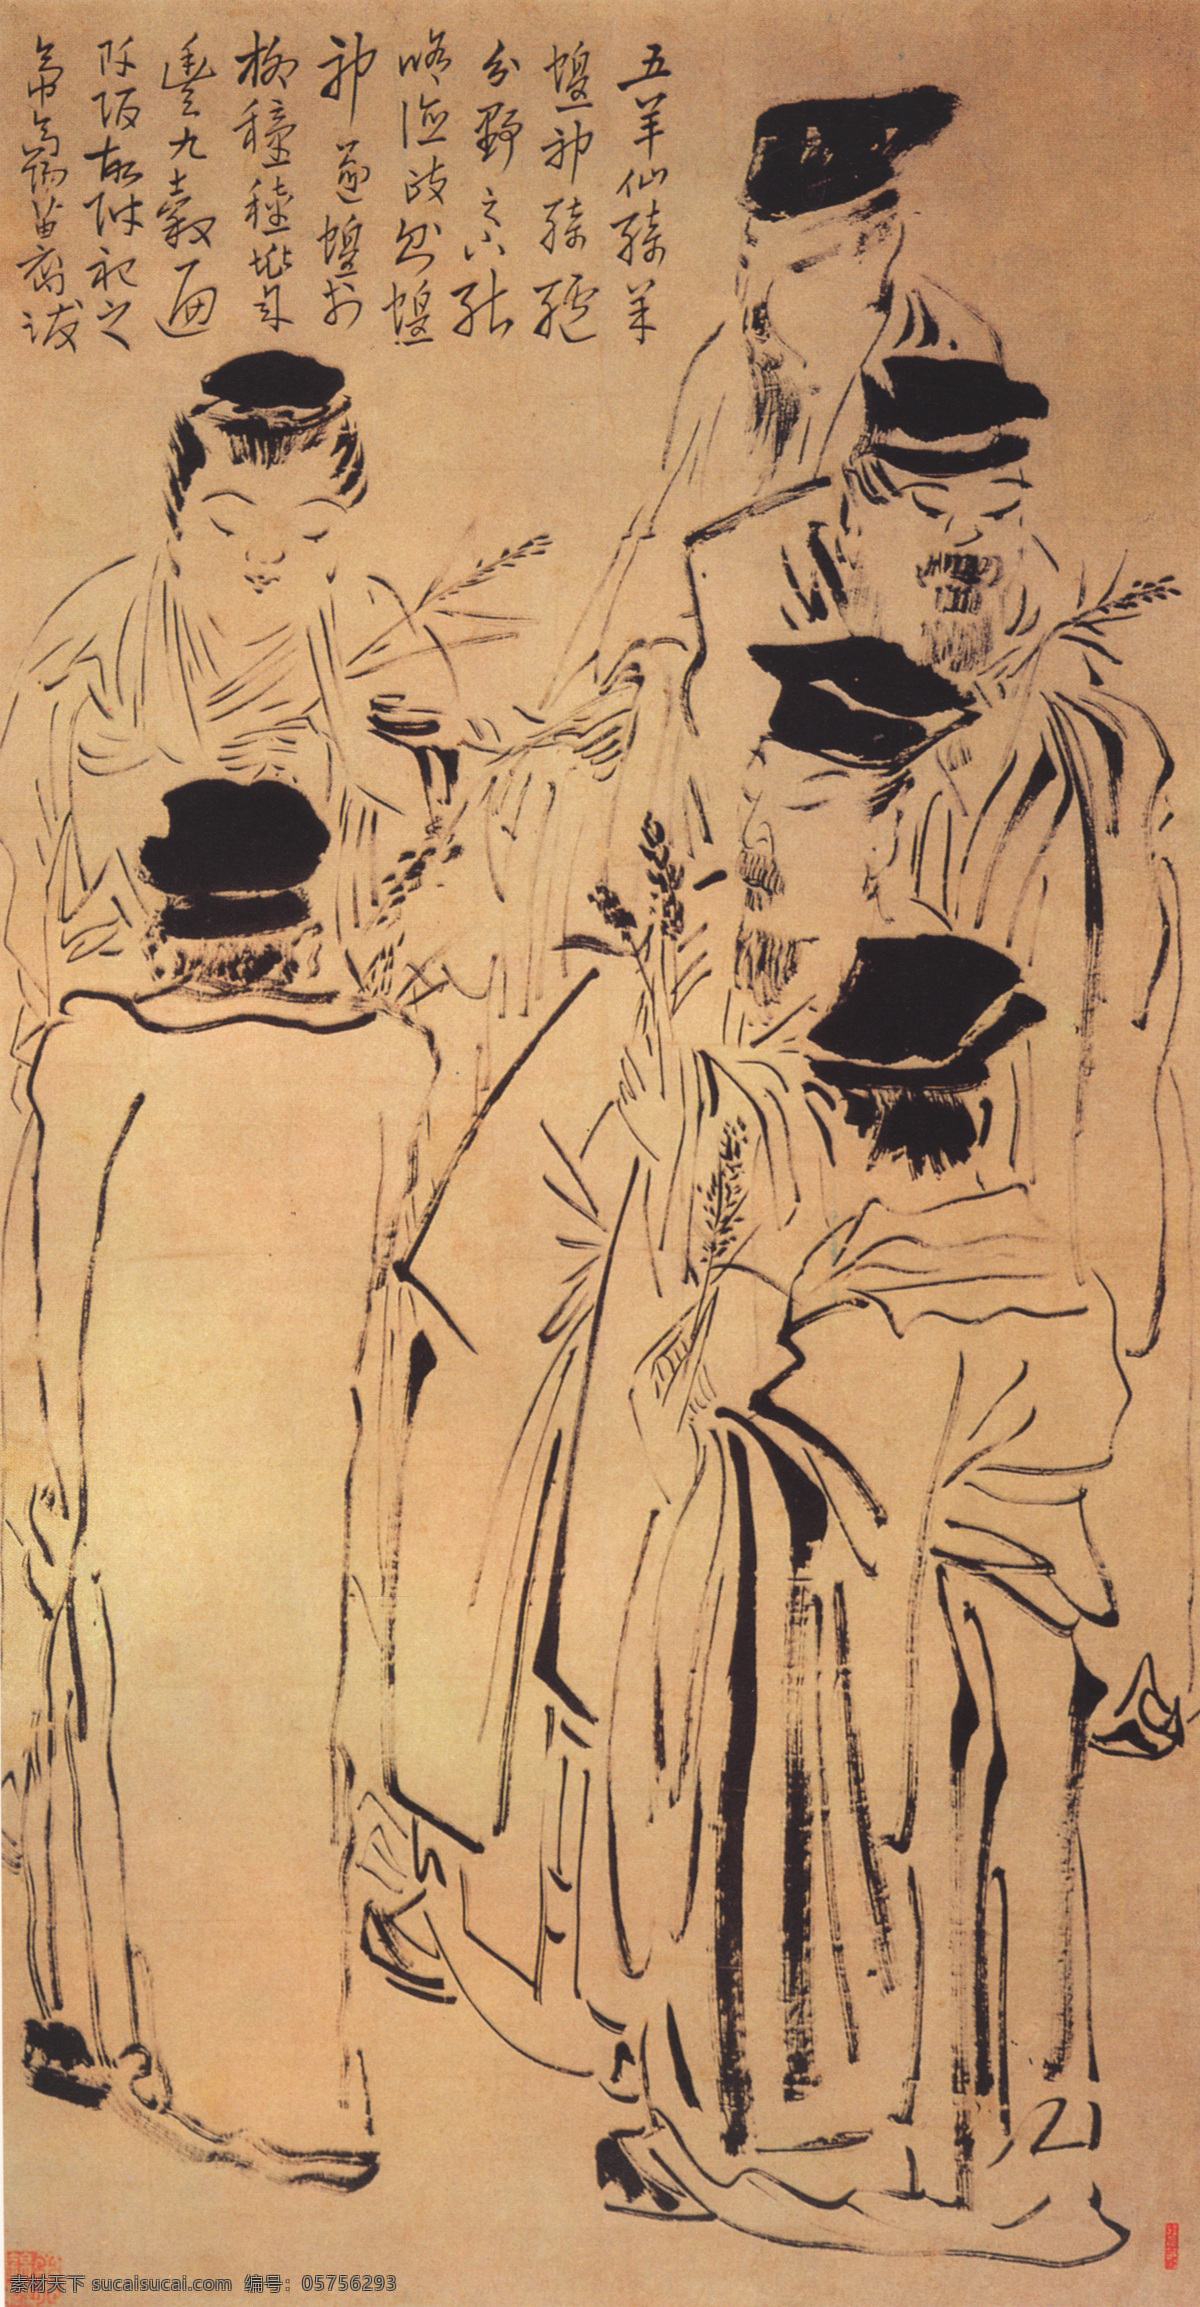 五羊仙迹图 人物画 中国 古画 中国古画 设计素材 人物名画 古典藏画 书画美术 棕色